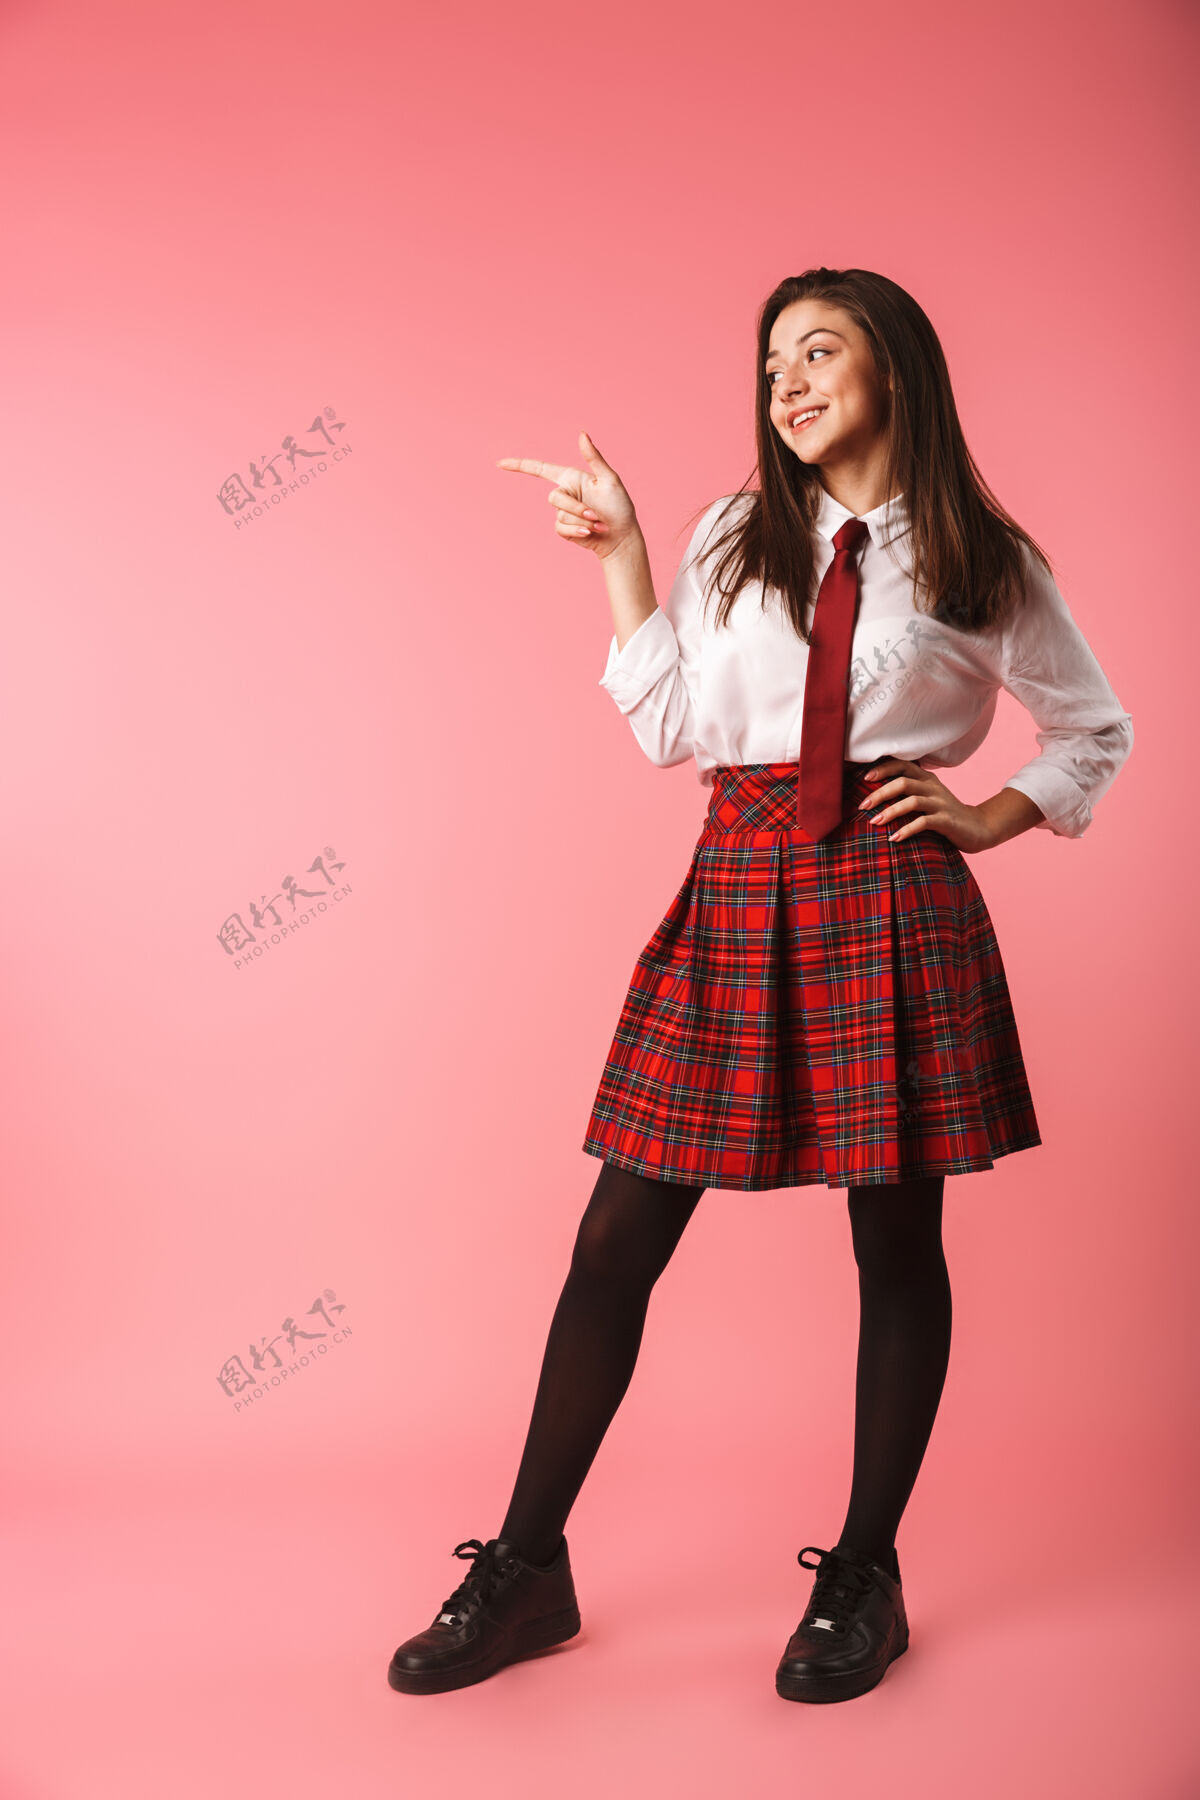 制服15-16岁穿着校服的快乐女孩站在红墙上的画像乐观积极青少年